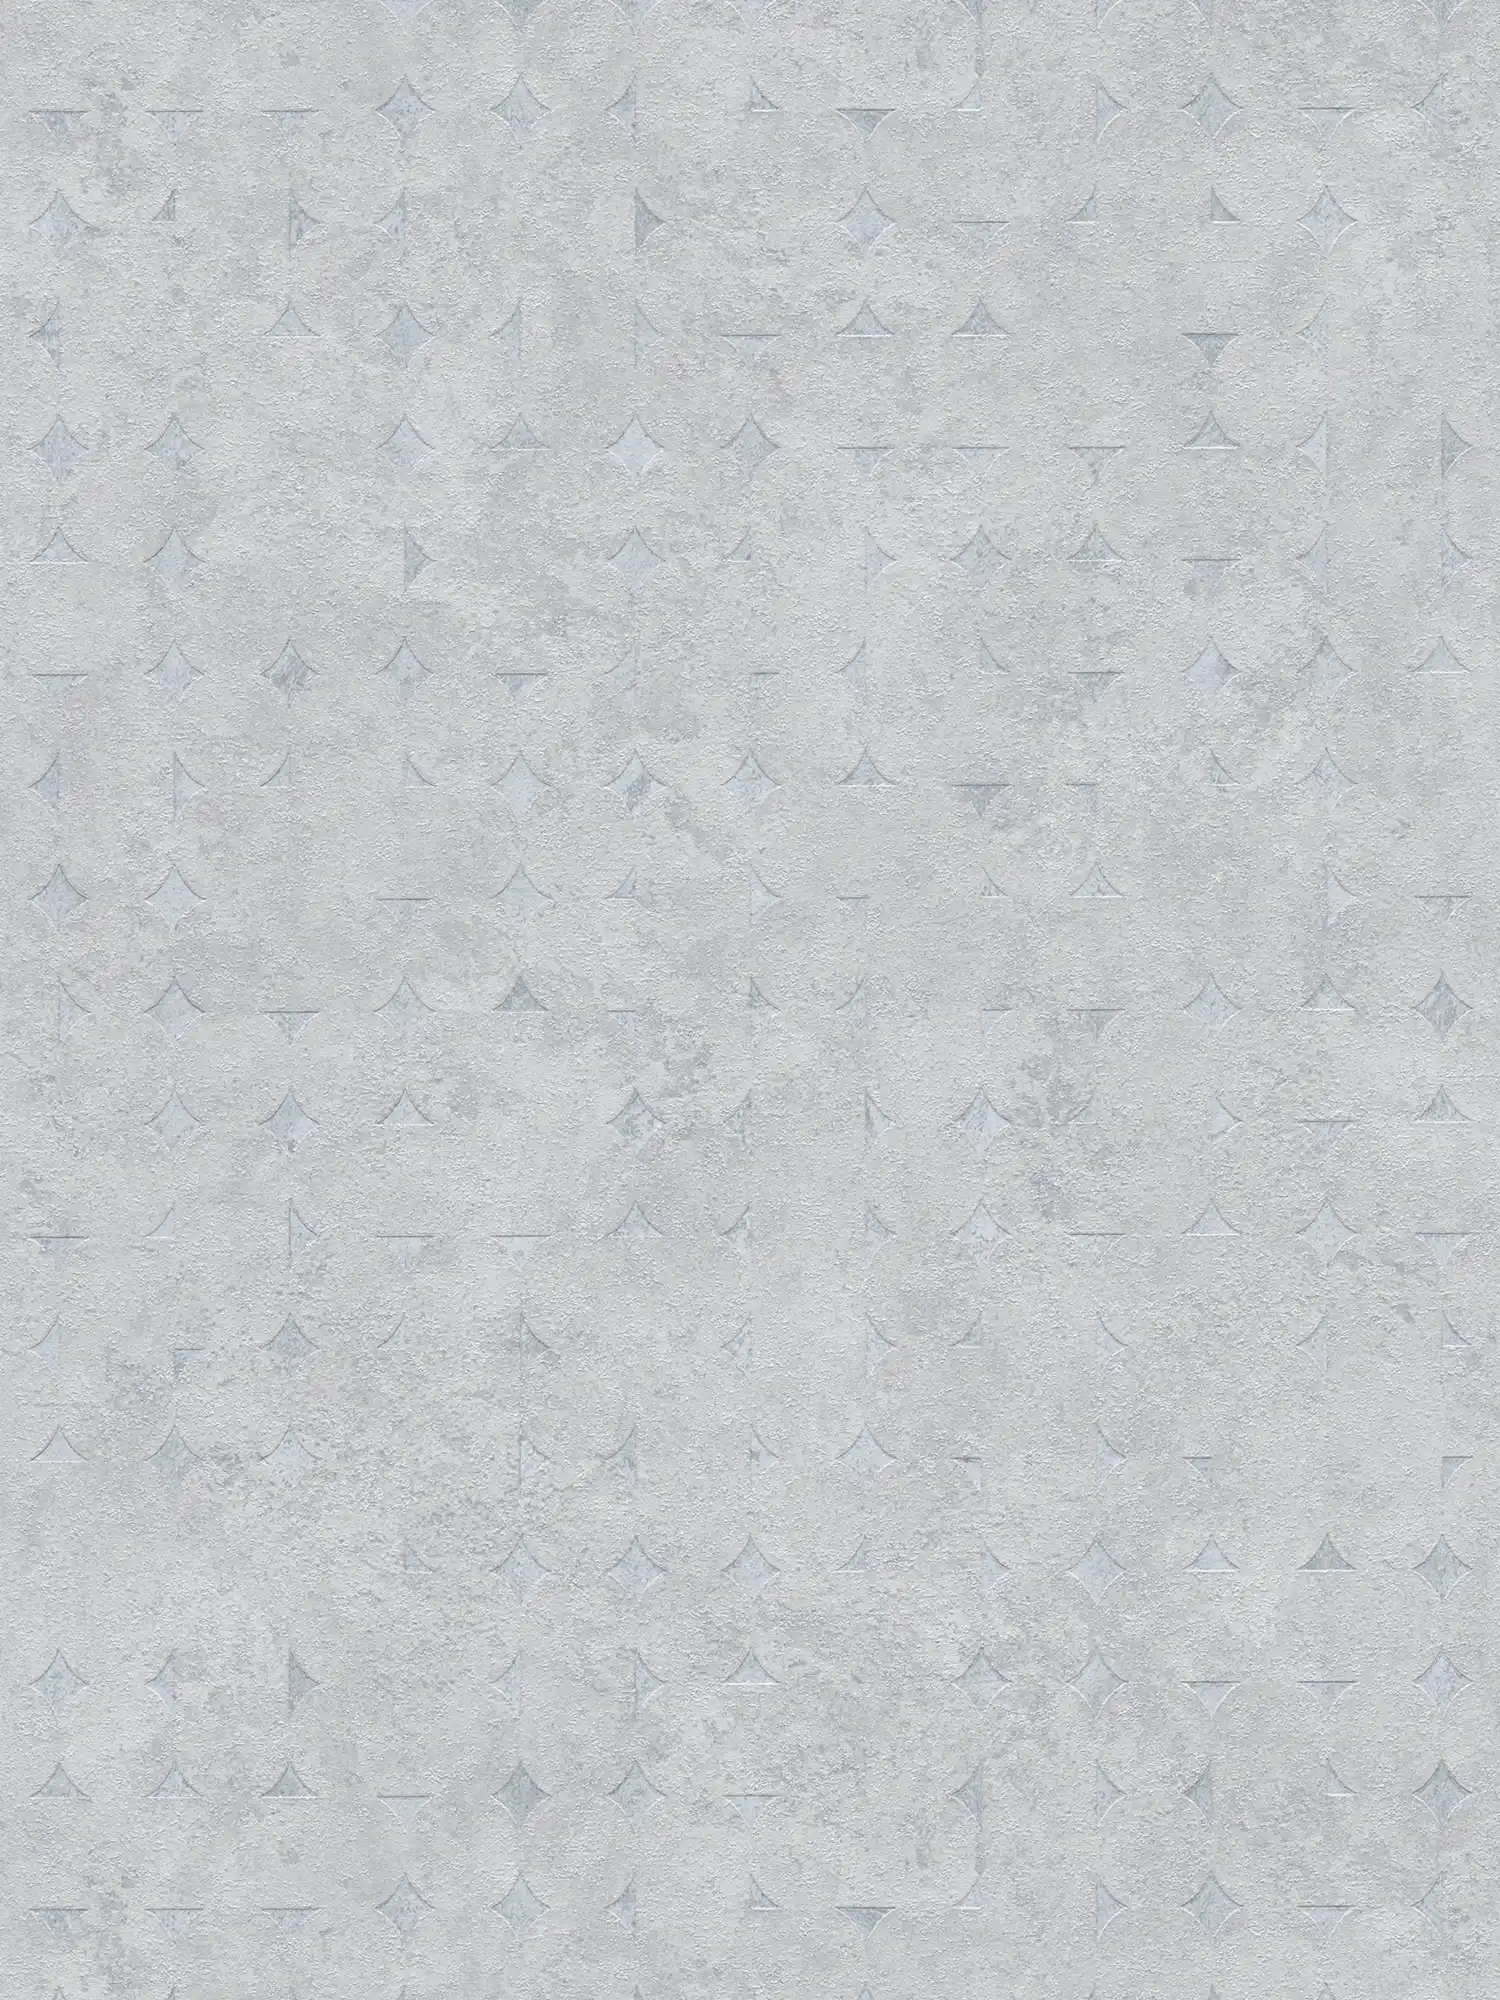 Carta da parati non tessuta con forme geometriche e accenti lucidi - grigio chiaro, argento
